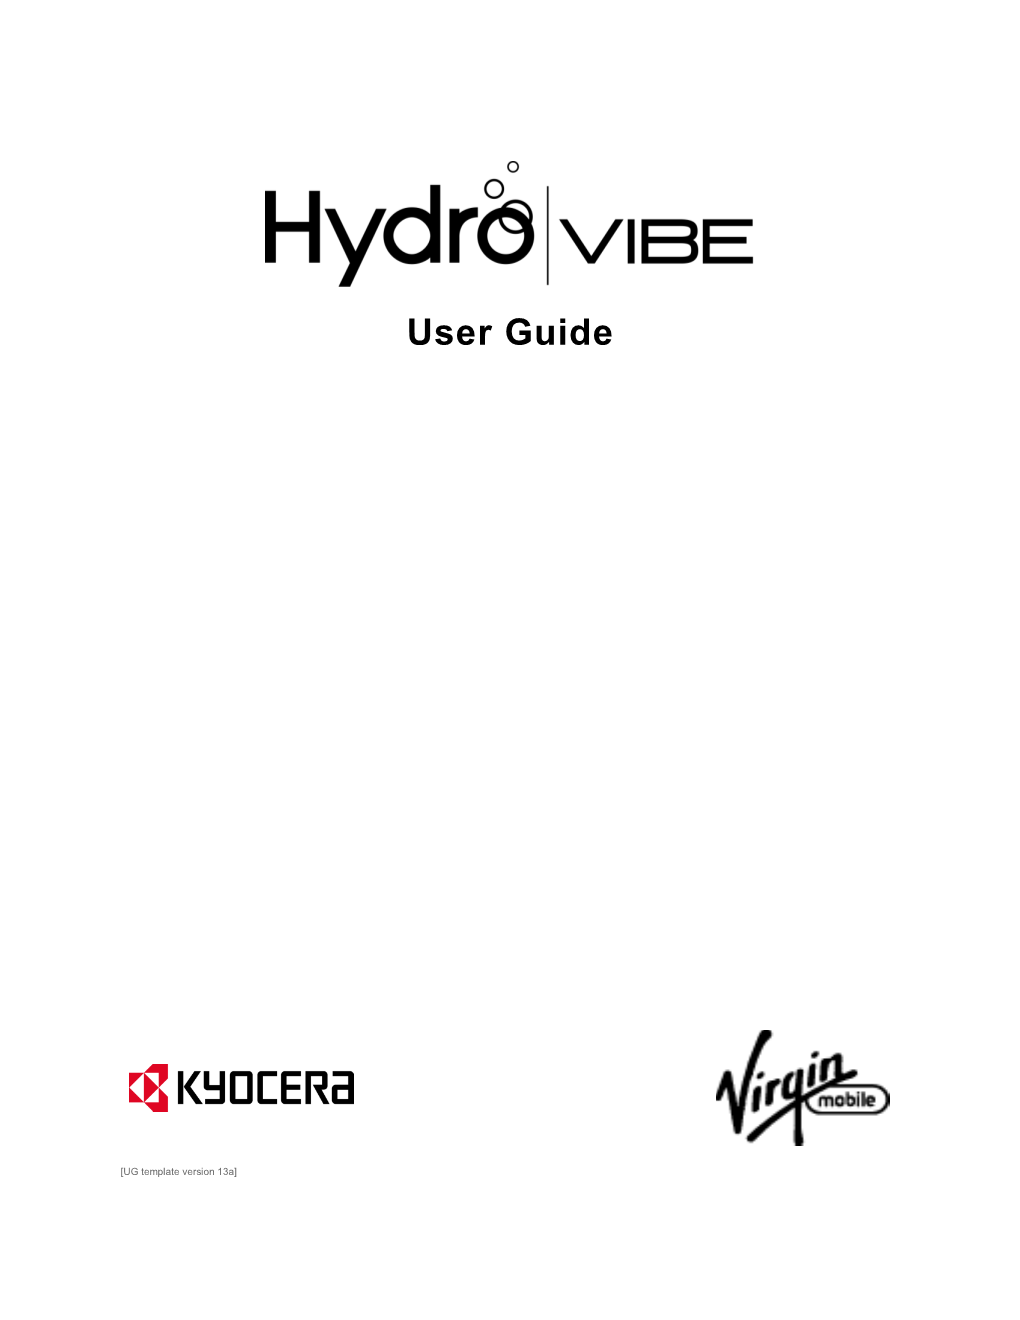 Virgin Mobile User Guide